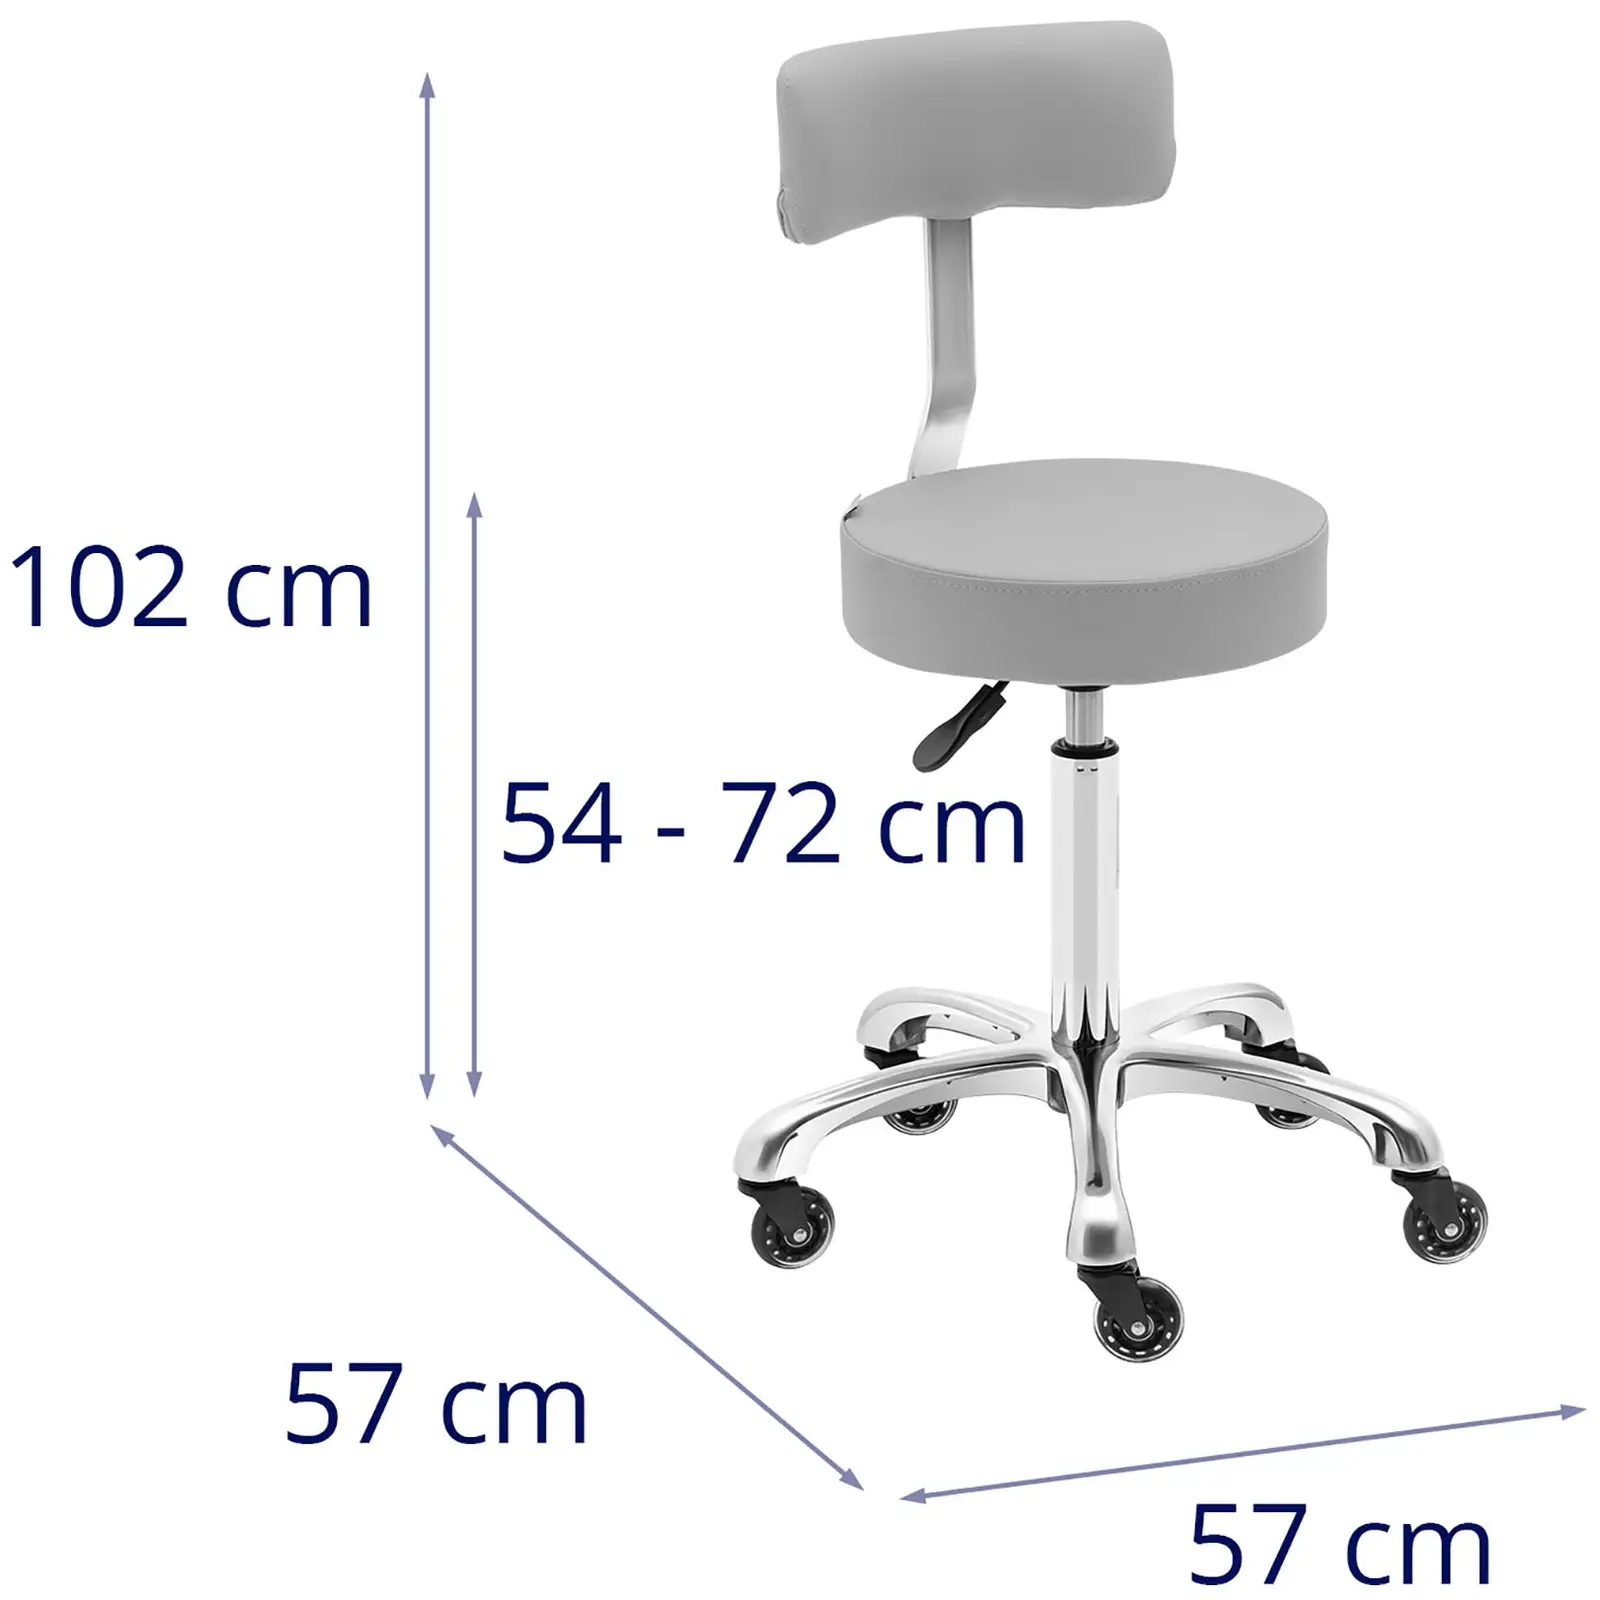 Scaun scaun cu spătar - 540 - 720 mm - Light grey